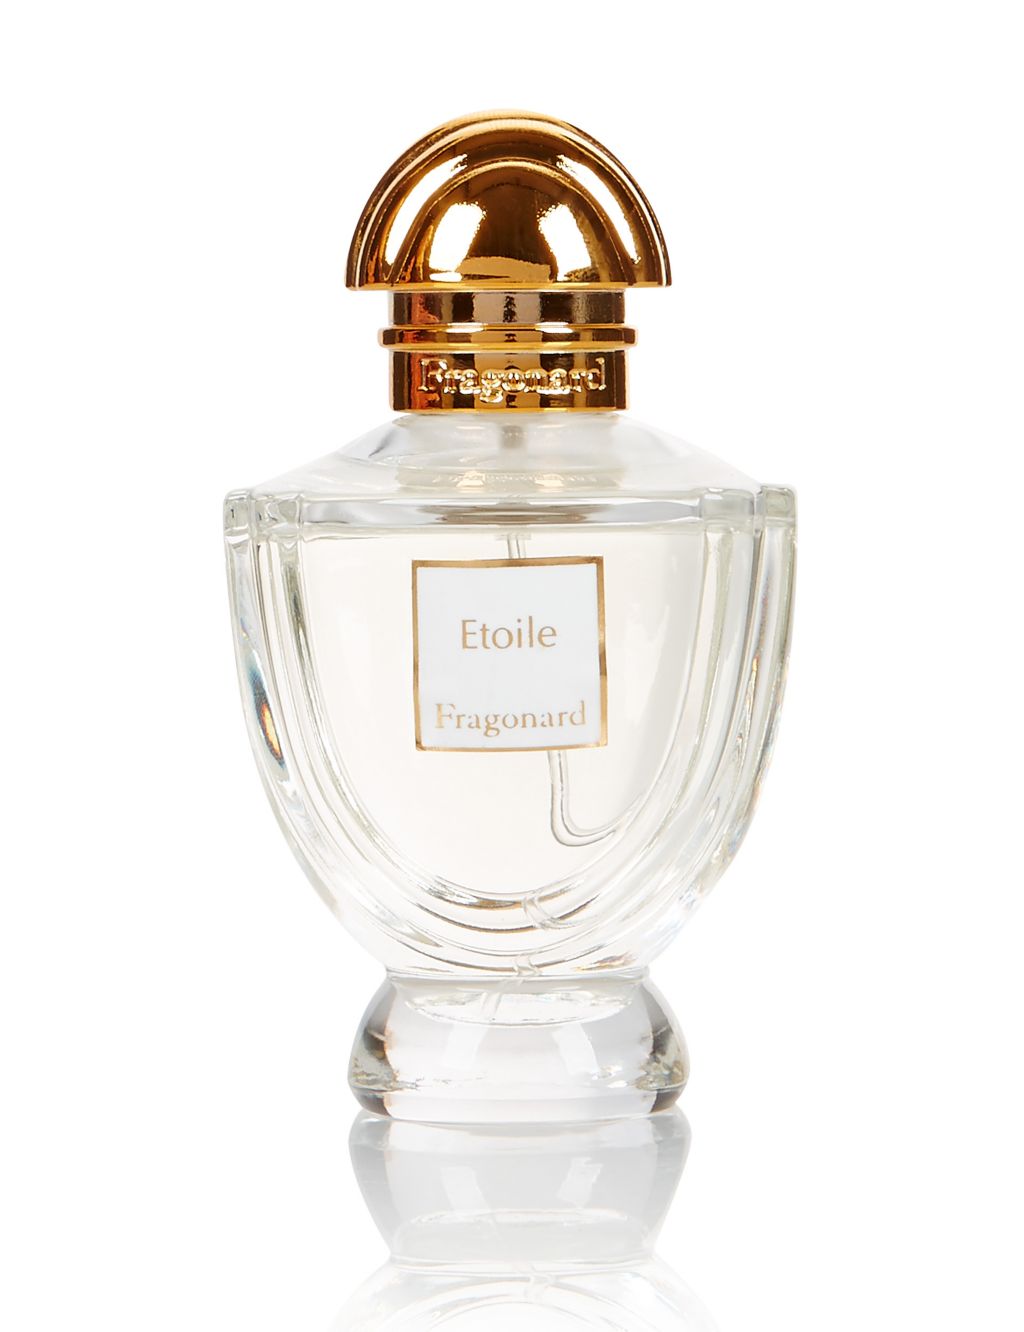 Etoile Eau de Parfum 50ml, Fragonard